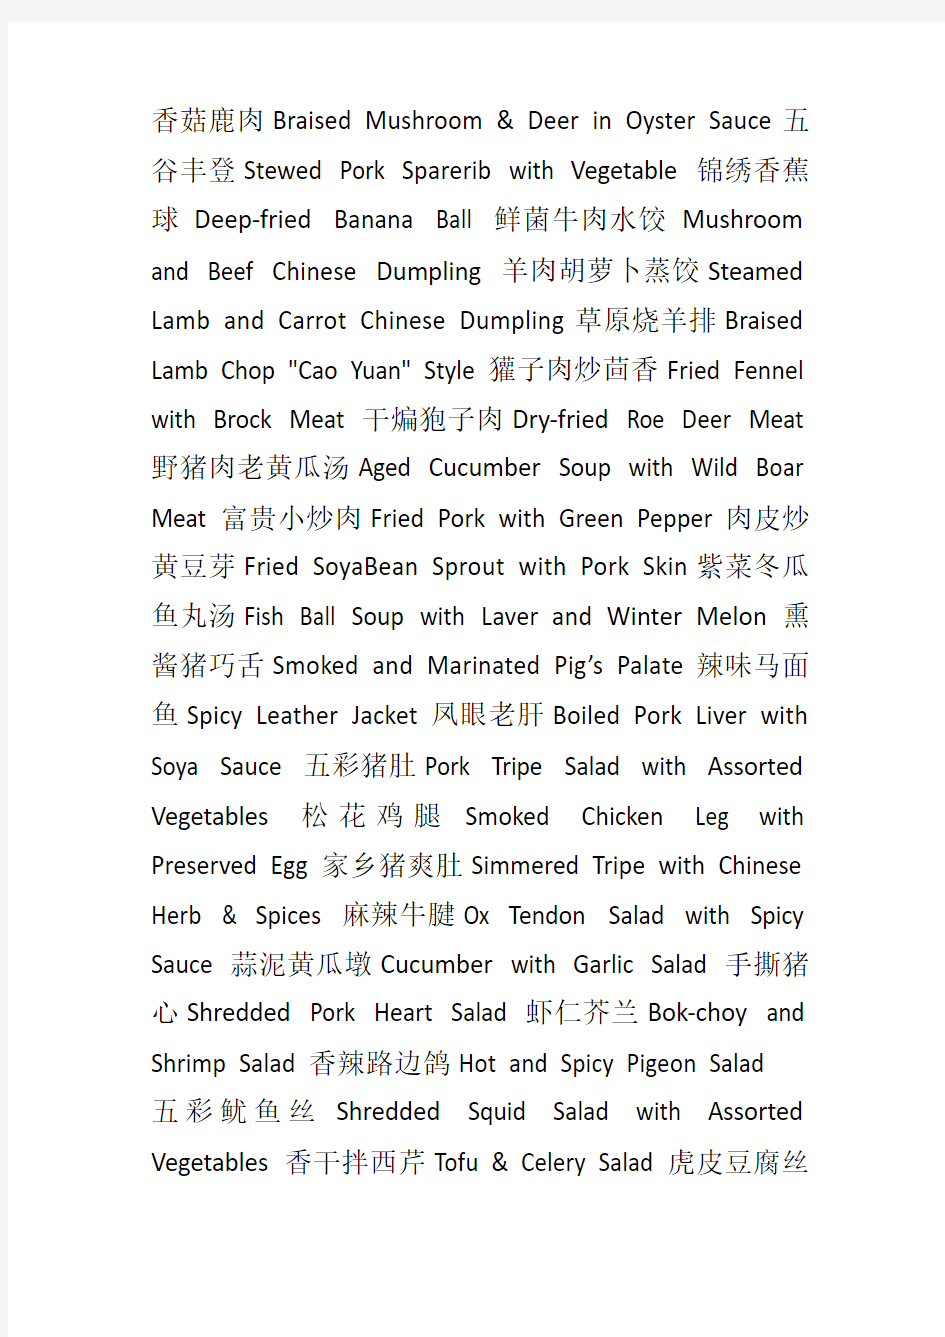 中餐菜单中英文词汇